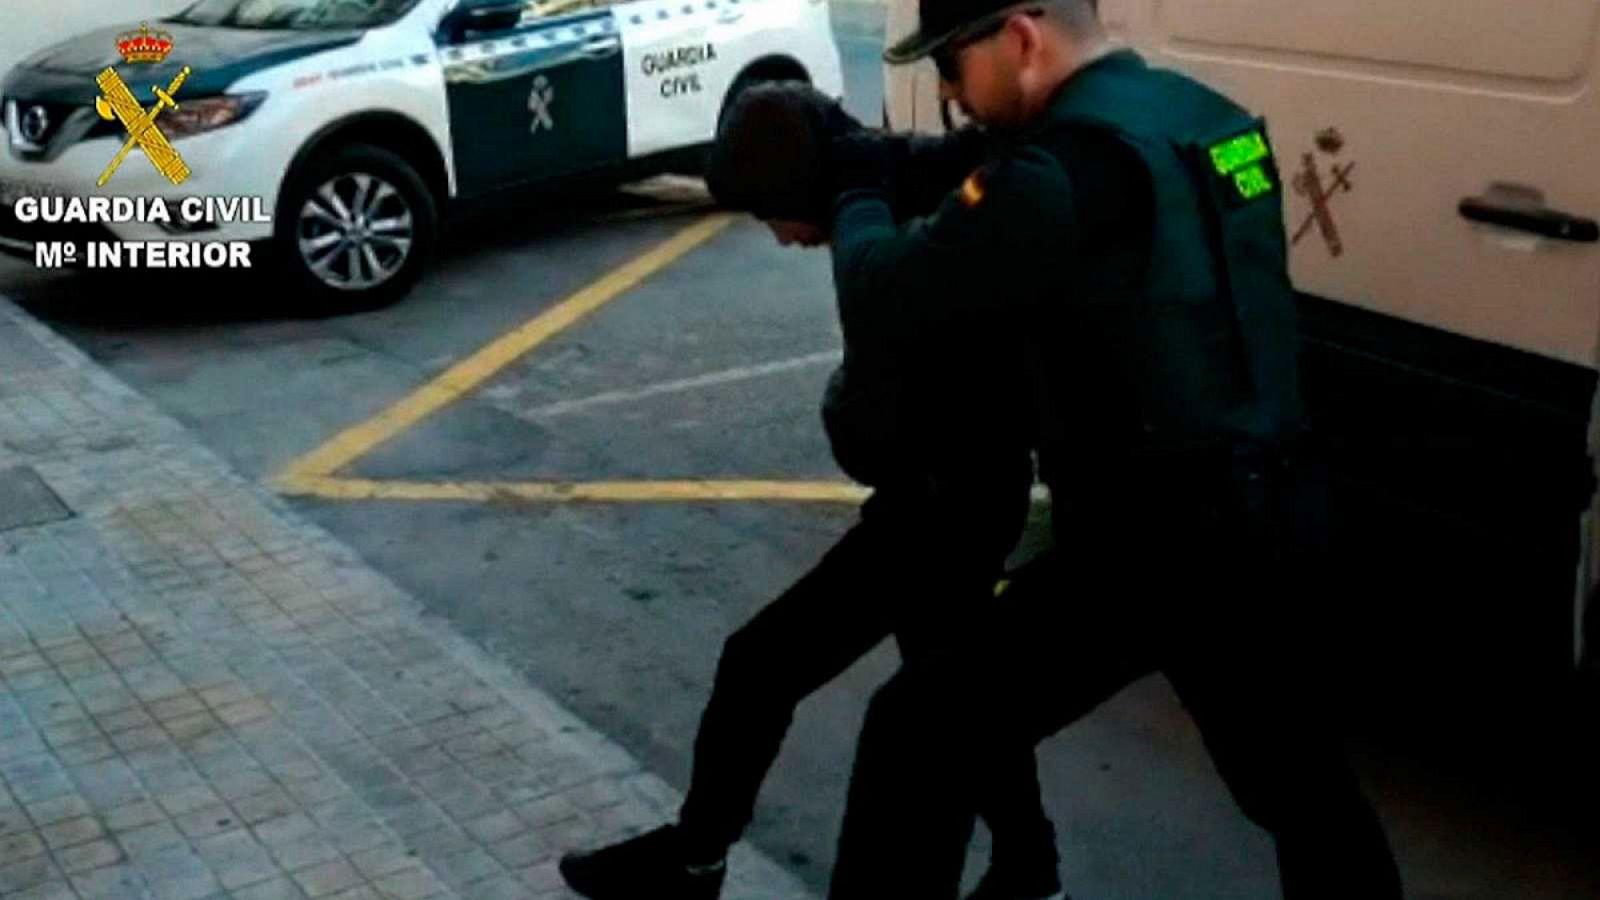 Los detenidos por la violación en grupo en Alicante podrían haber participado en otras agresiones sexuales - RTVE.es